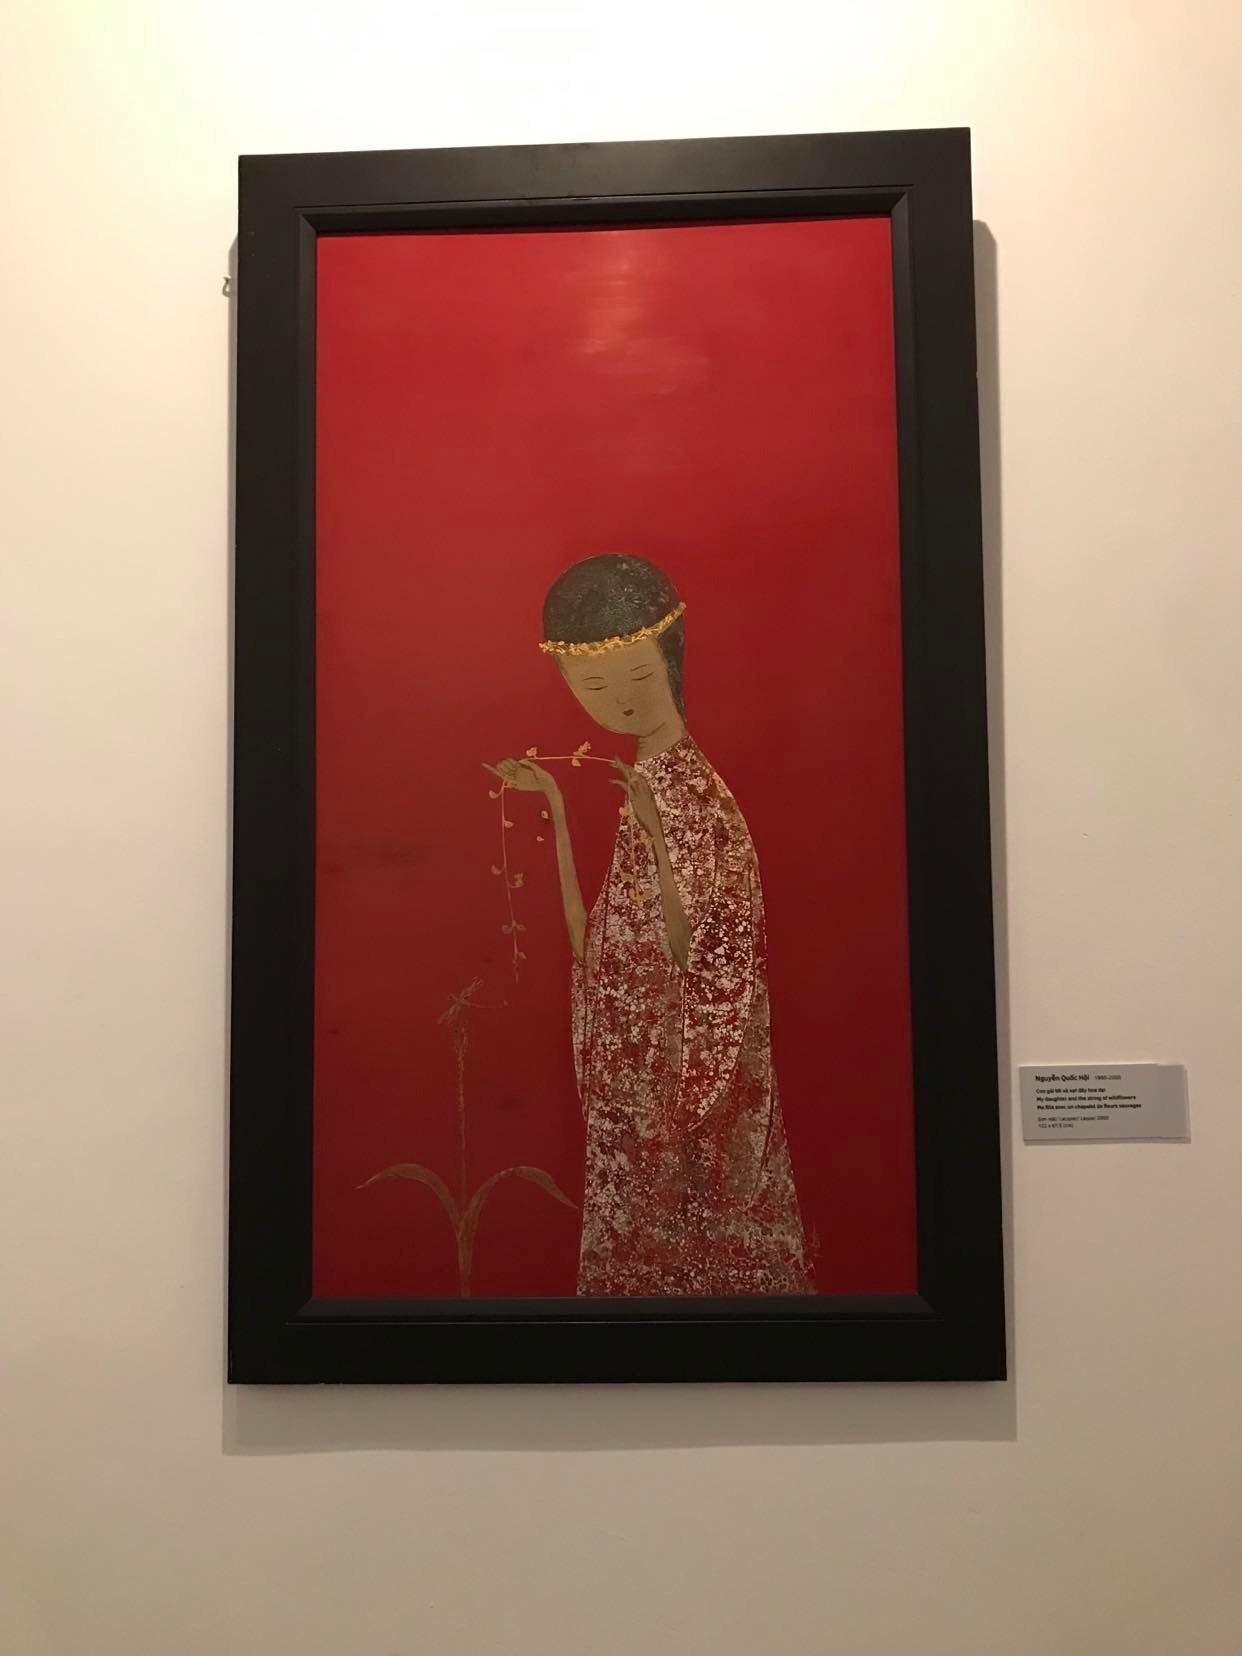 Tác phẩm “Con gái tôi và sợi dây hoa dại” (2003) của họa sĩ Nguyễn Quốc Hội.